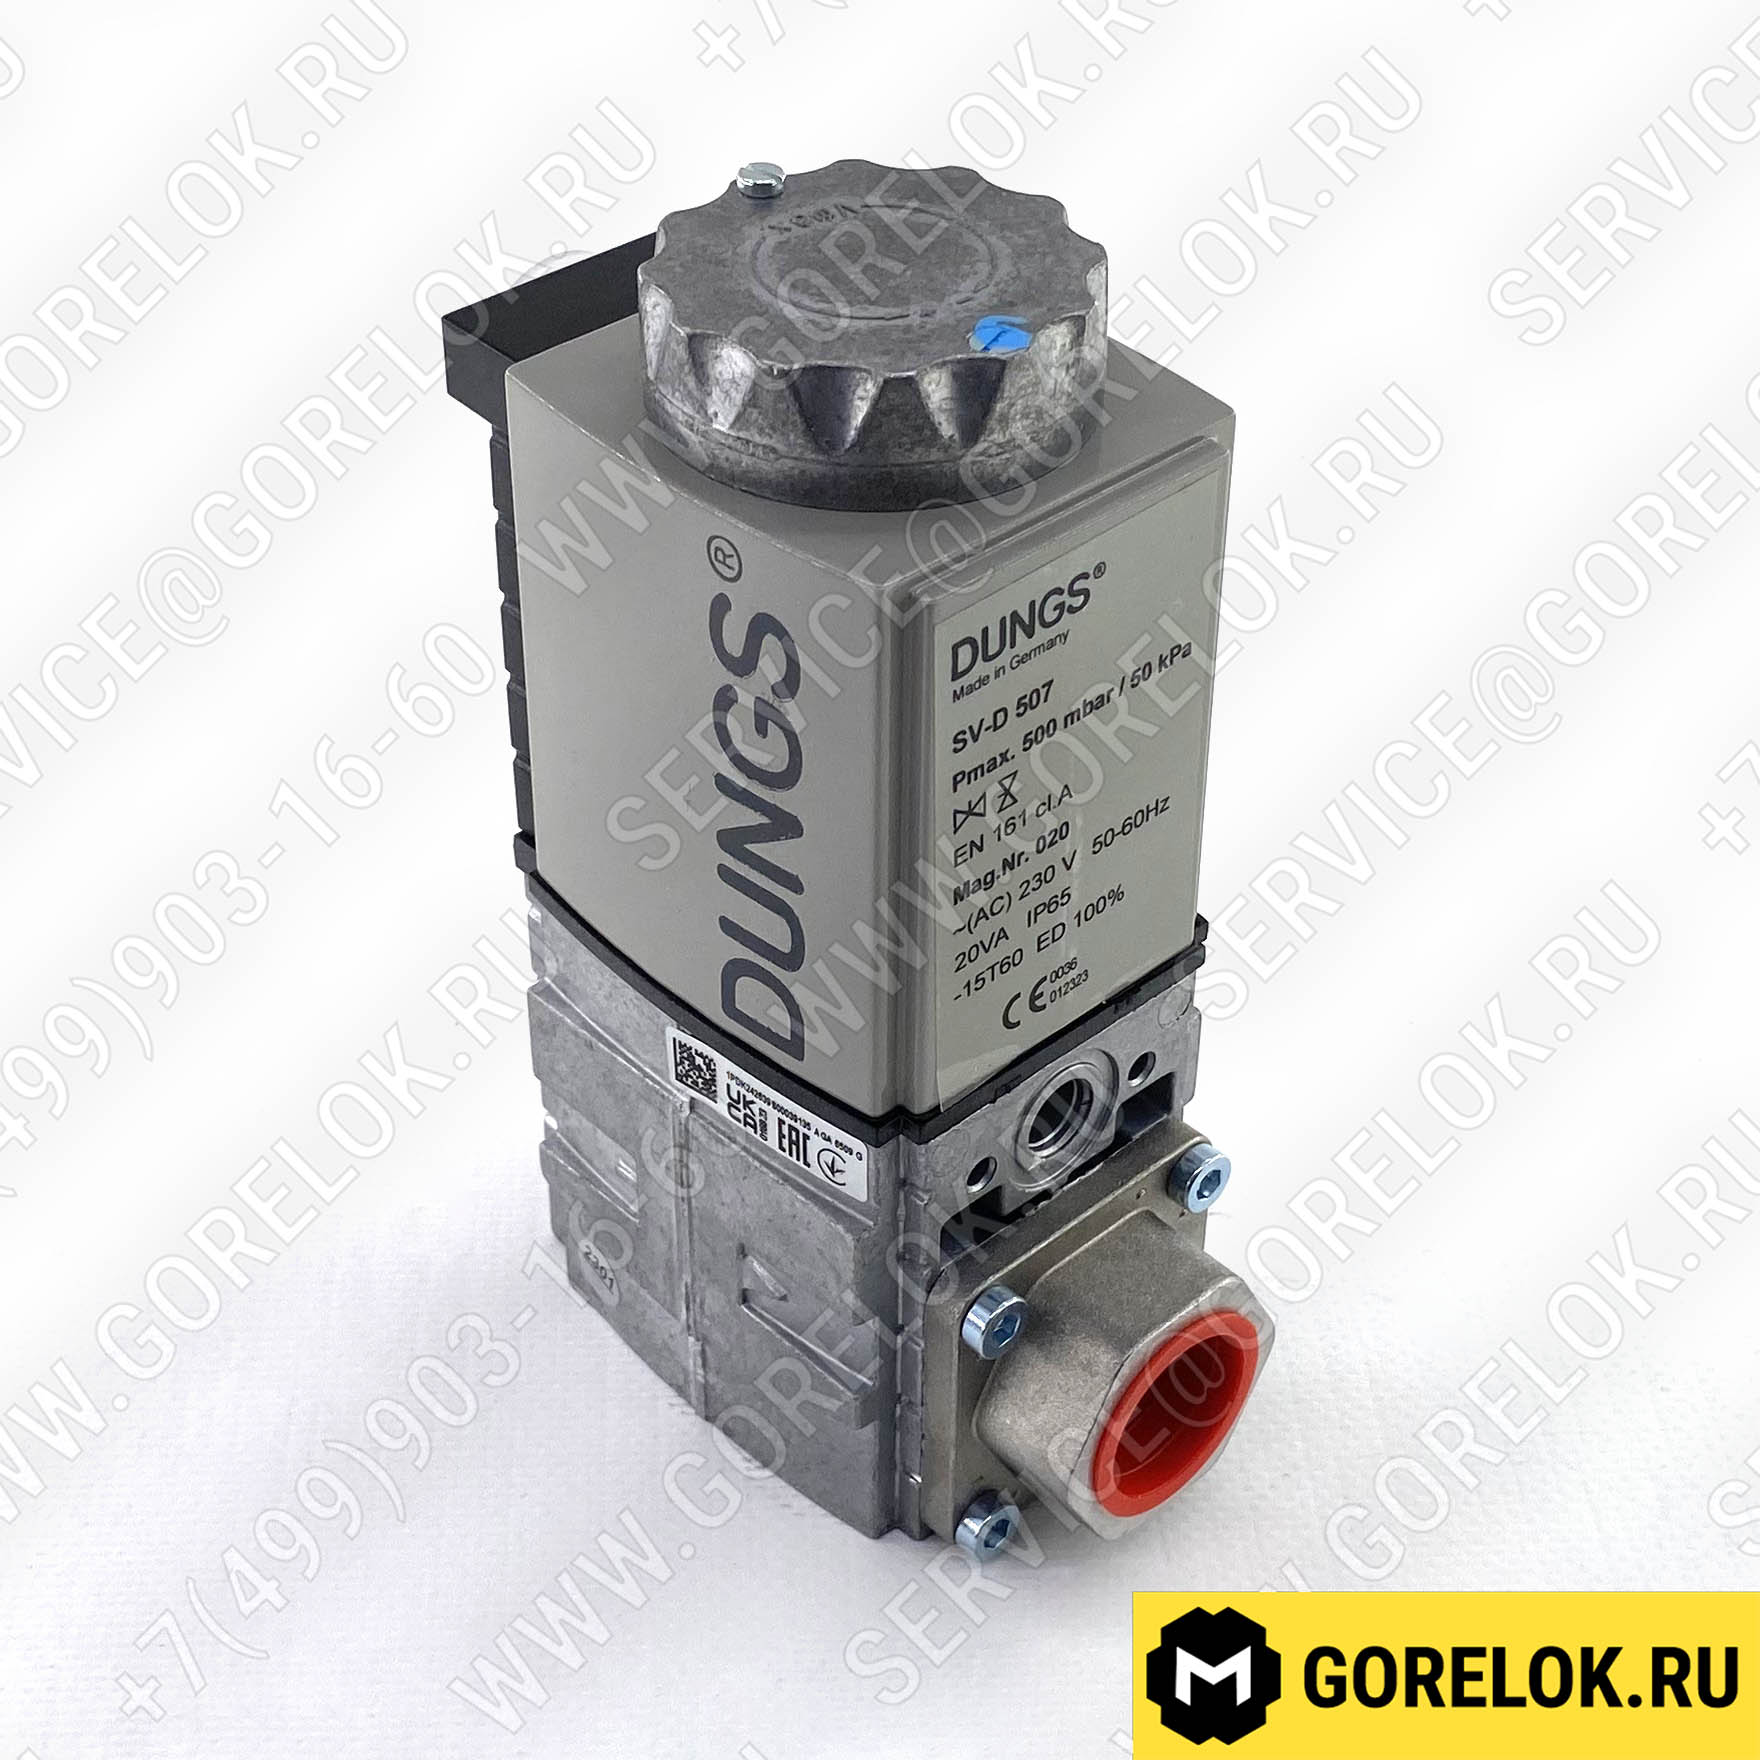 Газовый магнитный клапан SV-D 507 : WE605550, We605274